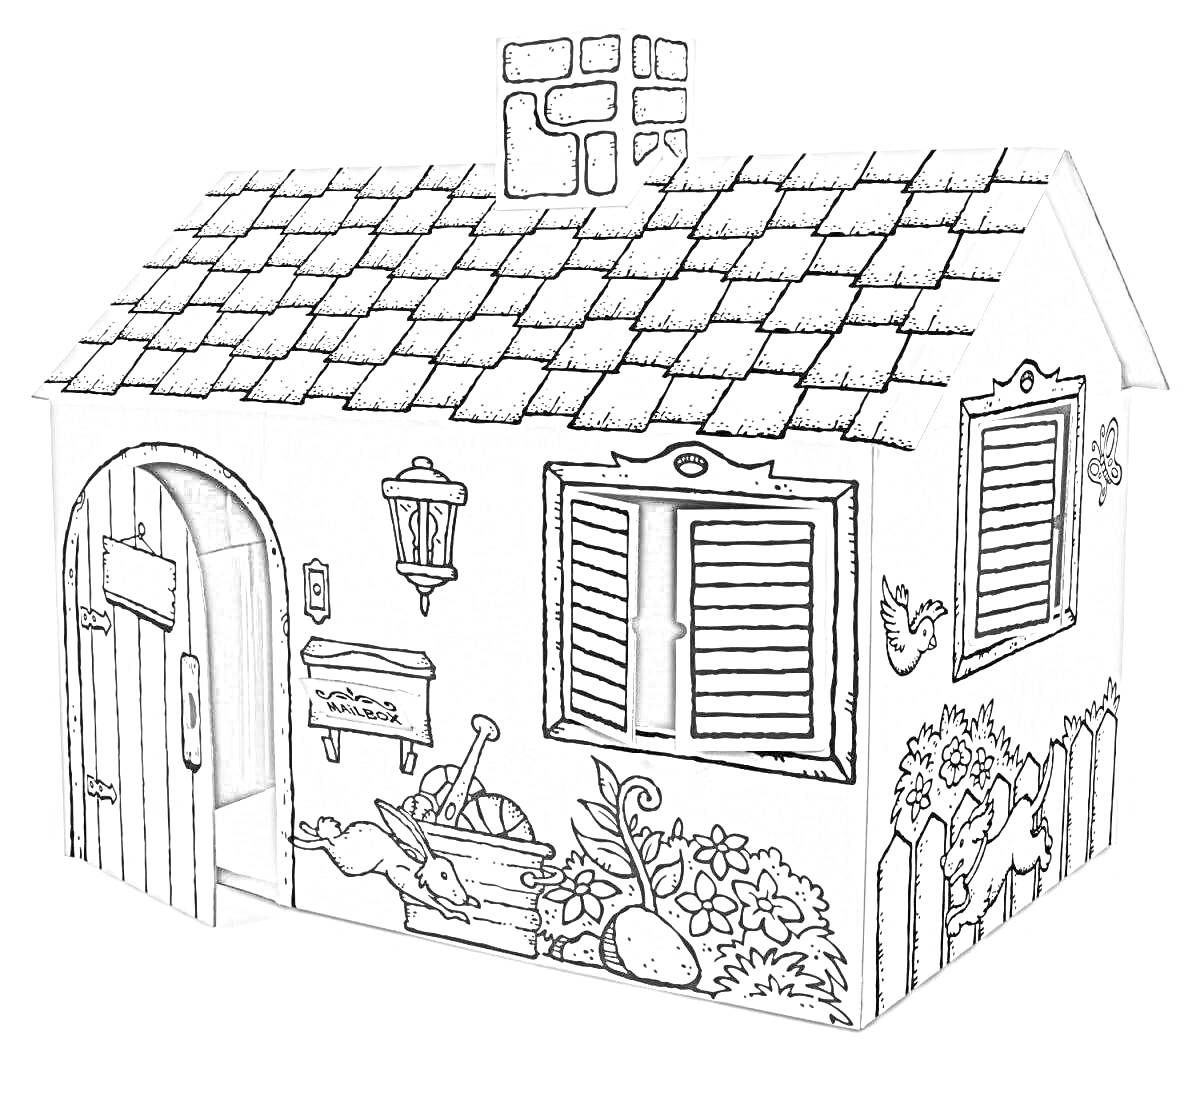 Раскраска Картонный домик с рельефной крышей, открытой дверью и окном, почтовым ящиком, уличным фонарем, клумбой с растениями, огородными инструментами и забором